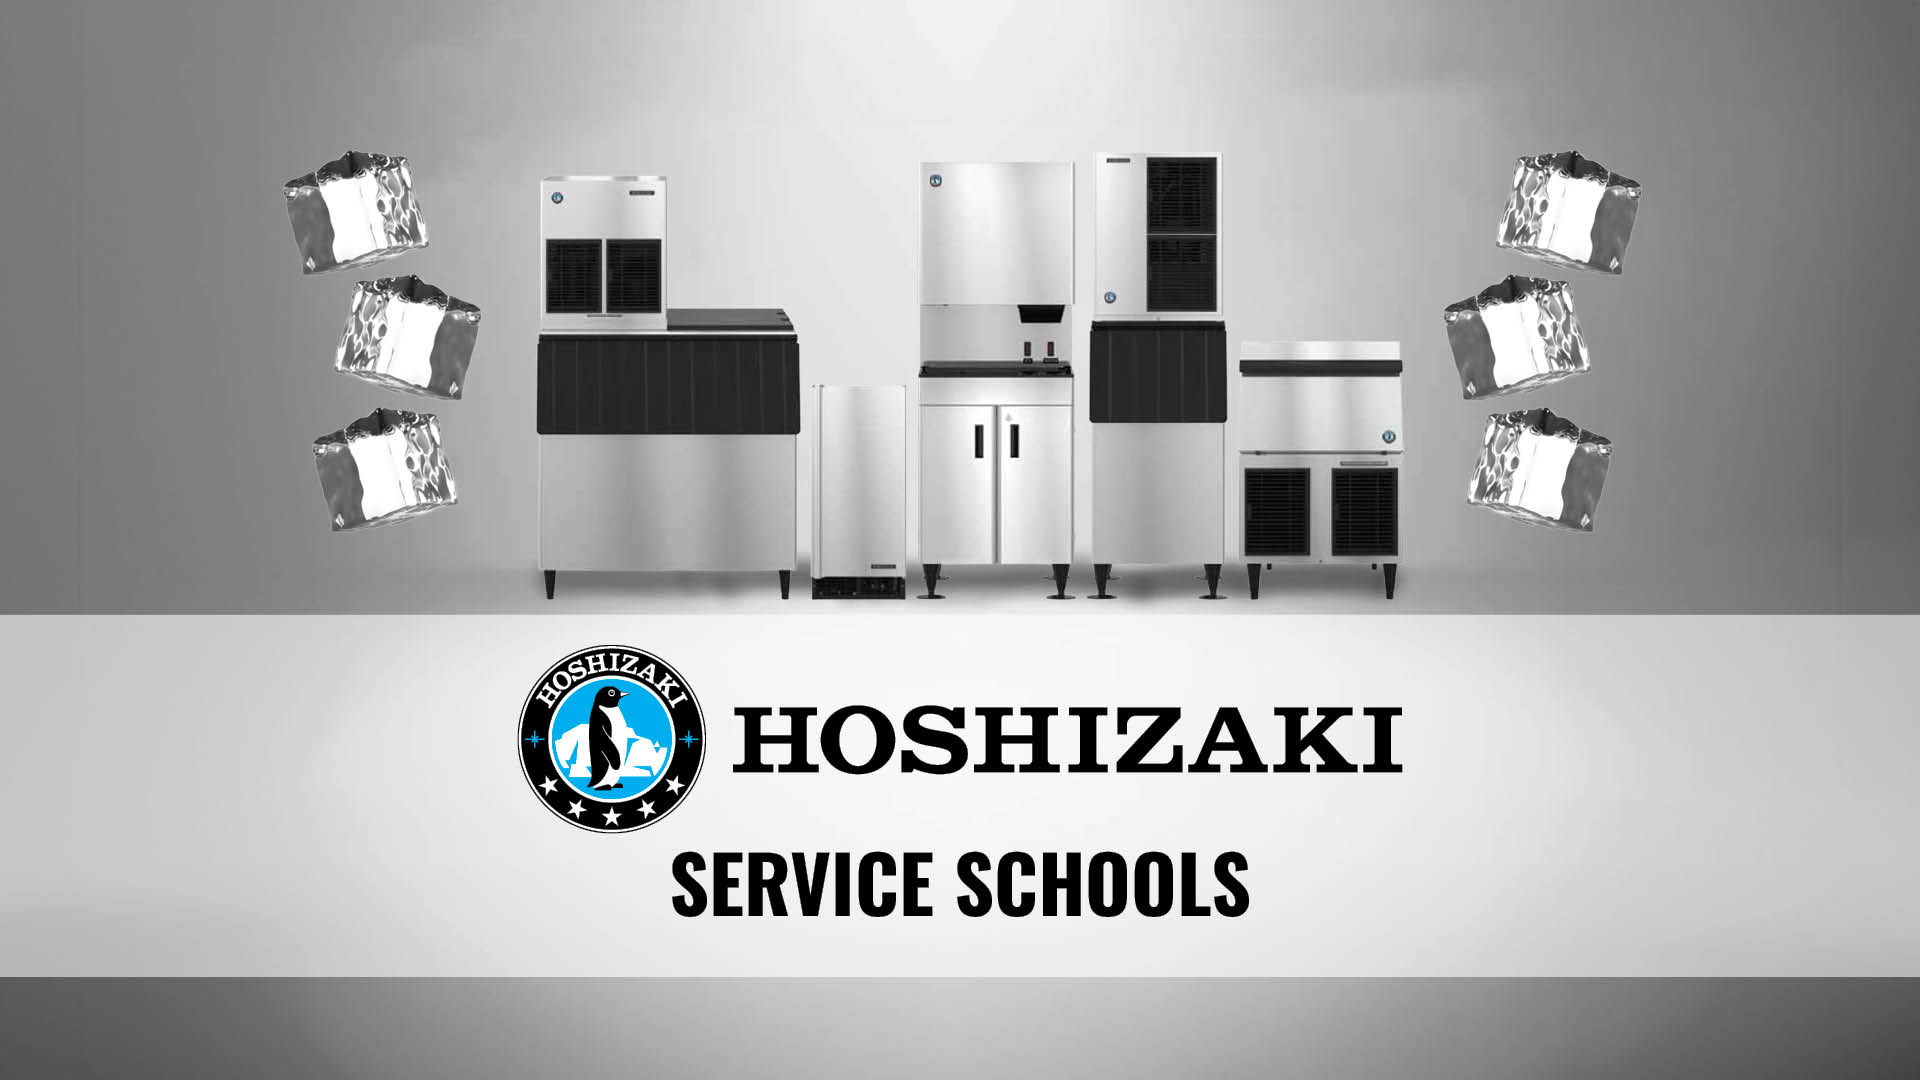 Hoshizaki Service Schools in Nanaimo